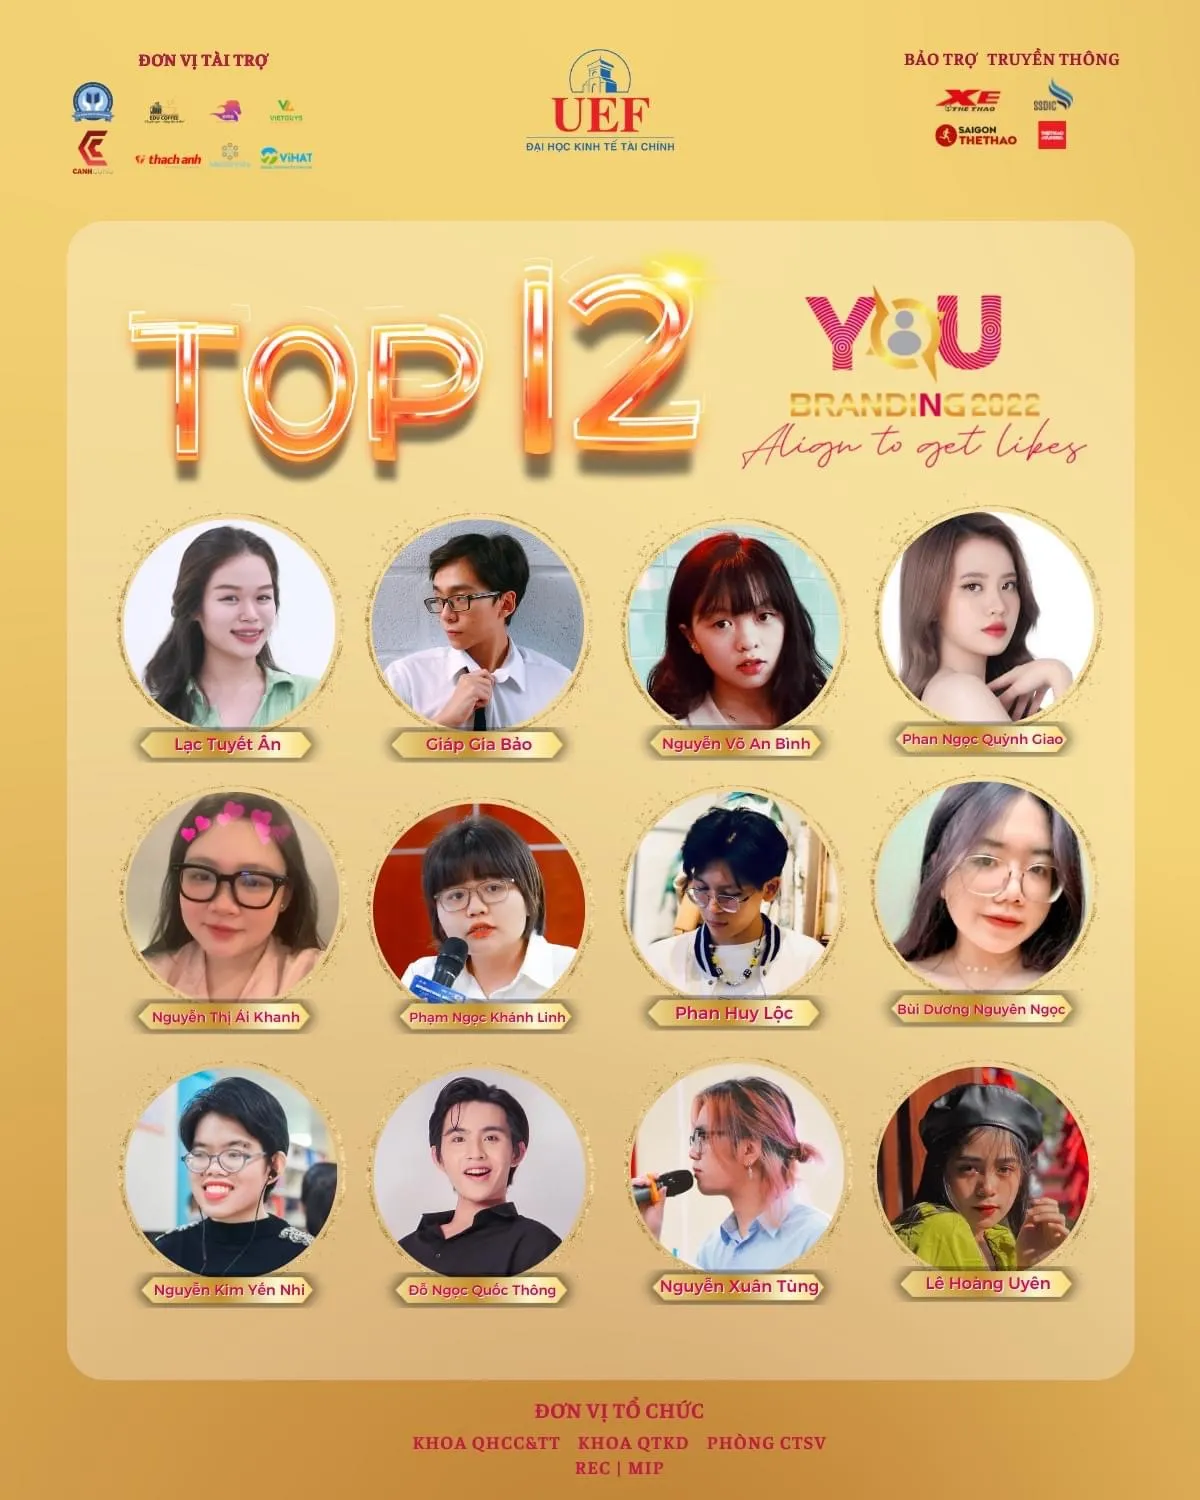 Top 12 thí sinh xuất sắc nhất lọt vào vòng chung kết cuộc thi YouBranding 2022https://www.w3.org/WAI/tutorials/images/decision-tree